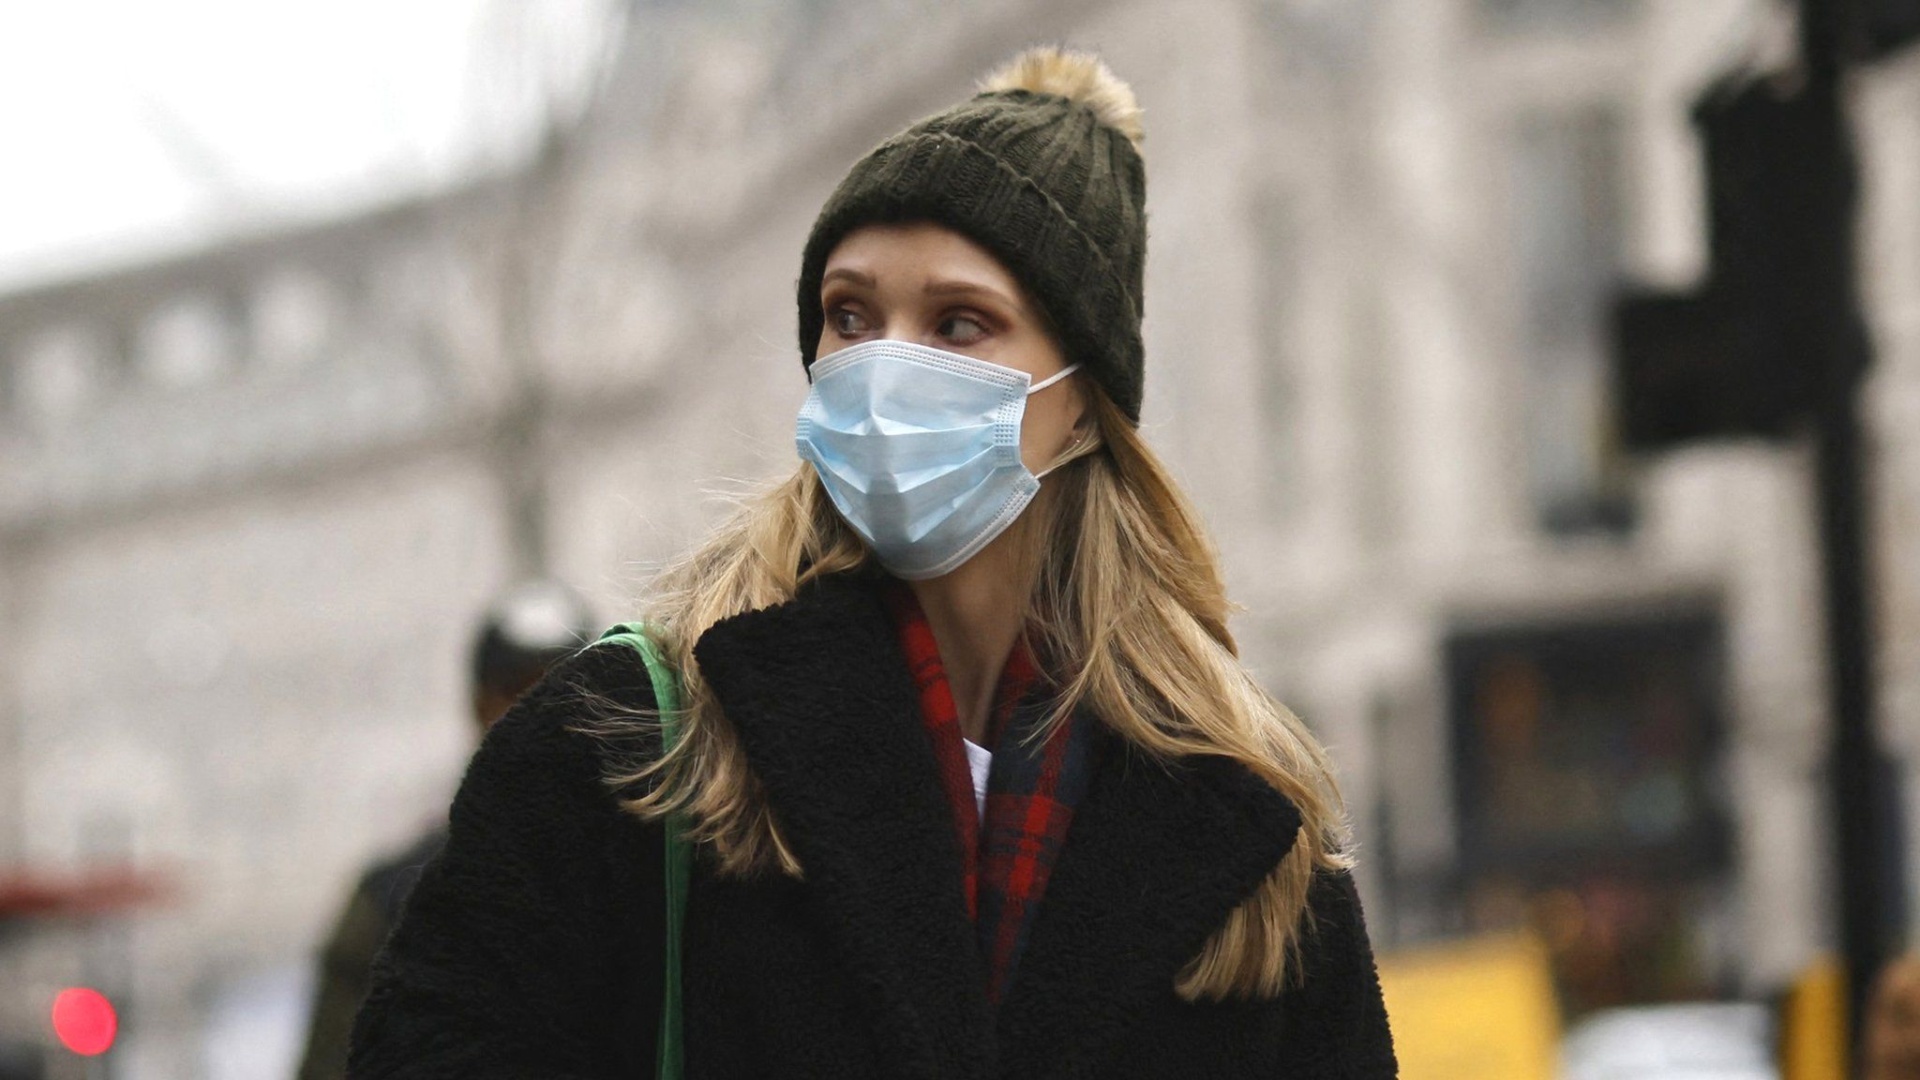 A woman in a mask walks down a street in London